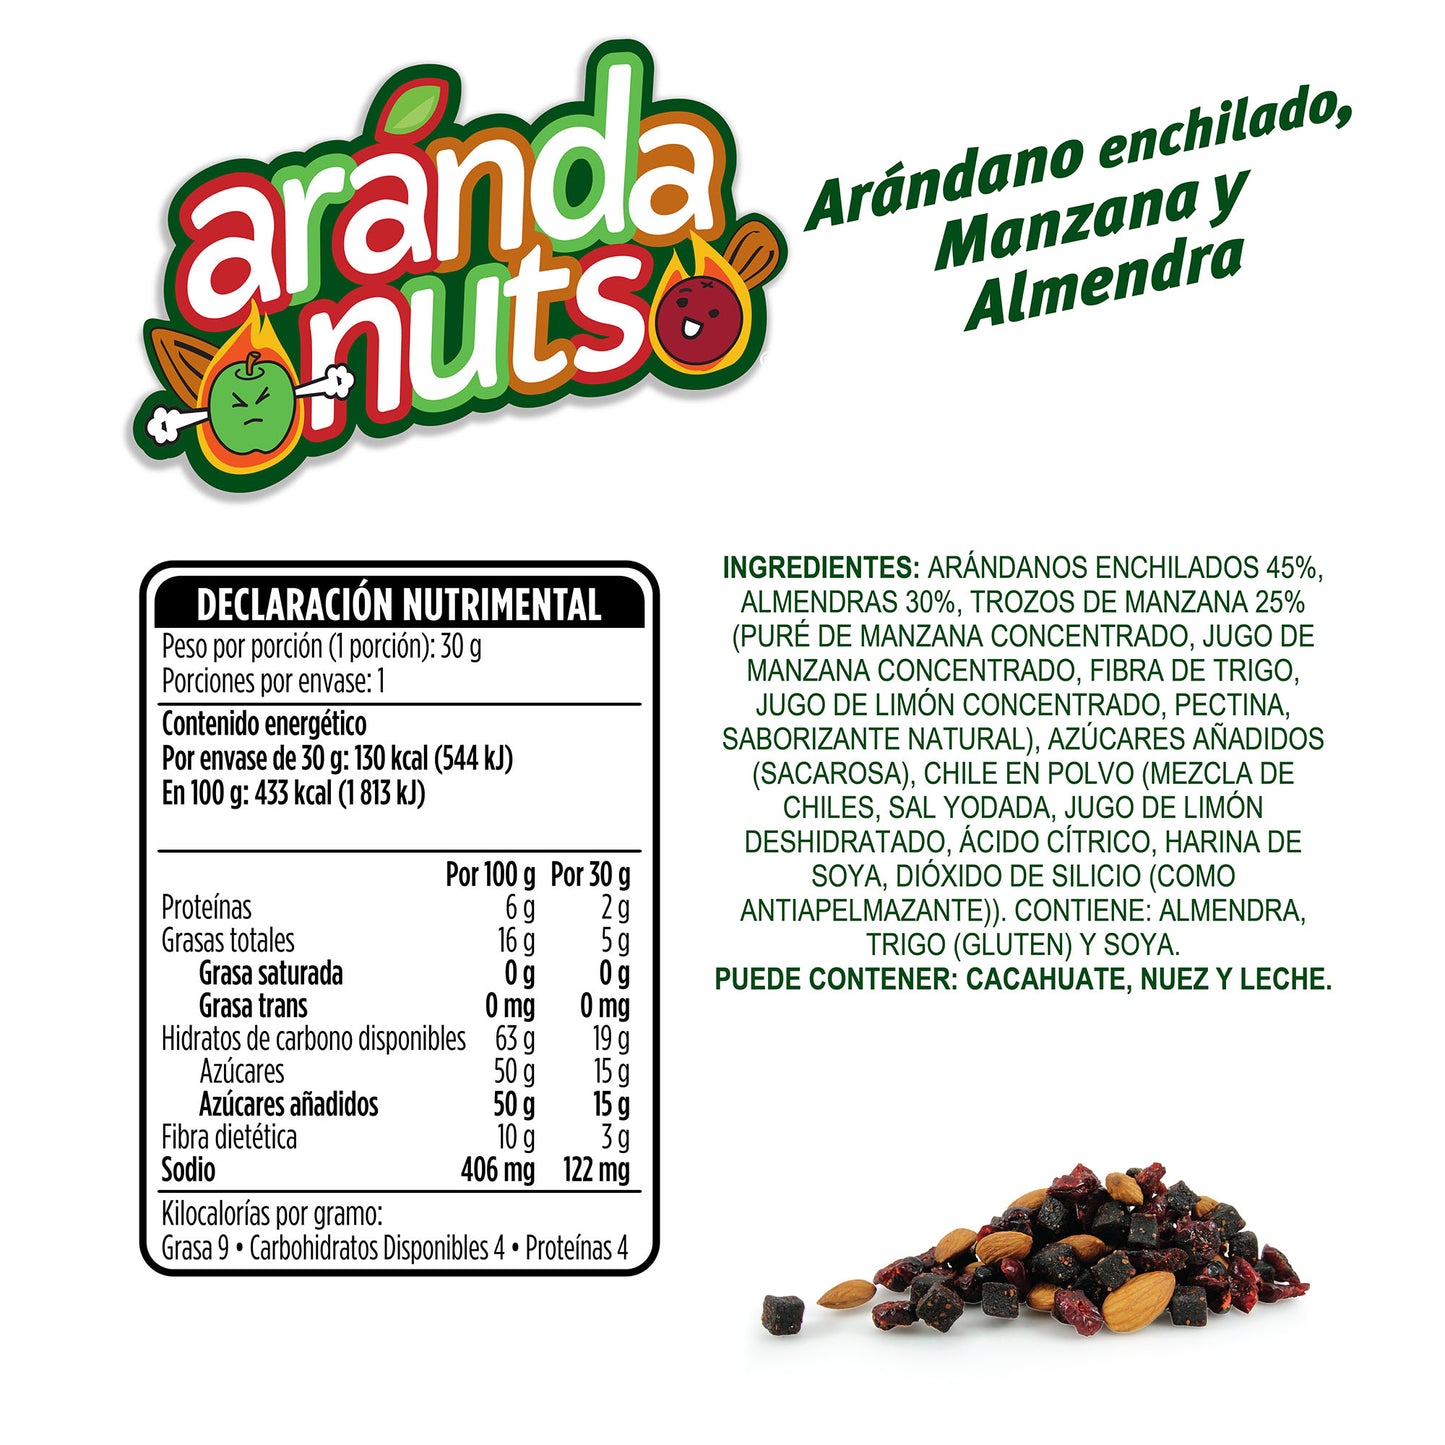 Bolsita Arándanuts® Arándanos Enchilados, Manzana Enchilada y Almendras de 25g